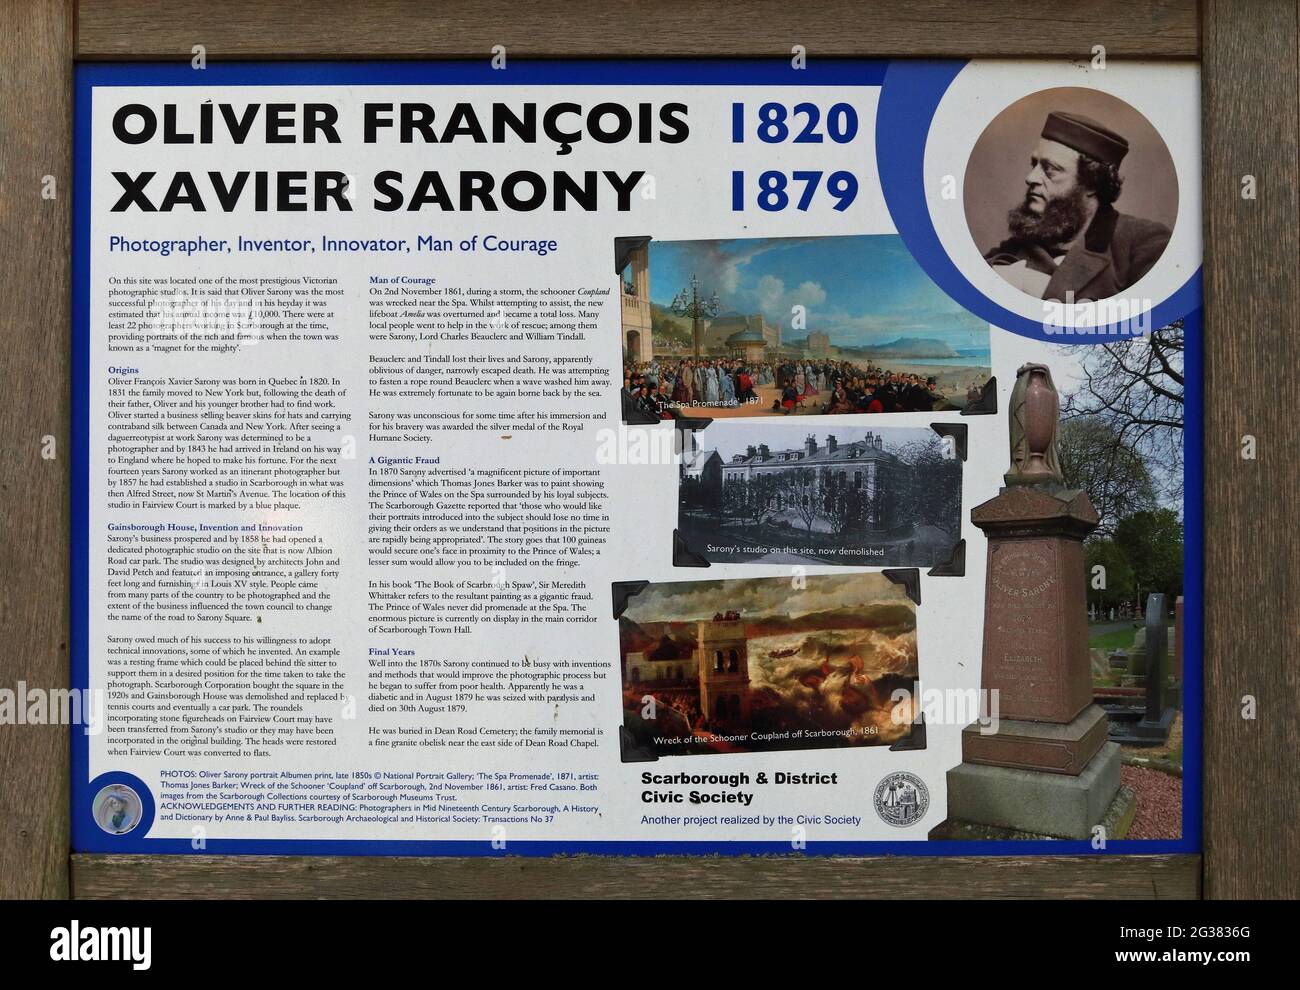 Die Informationstafel in der Nähe des Fairview Court in Scarborough erzählt einige der Geschichte von Oliver Francois Xavier Sarony, einem Fotografen aus dem 19. Jahrhundert Stockfoto